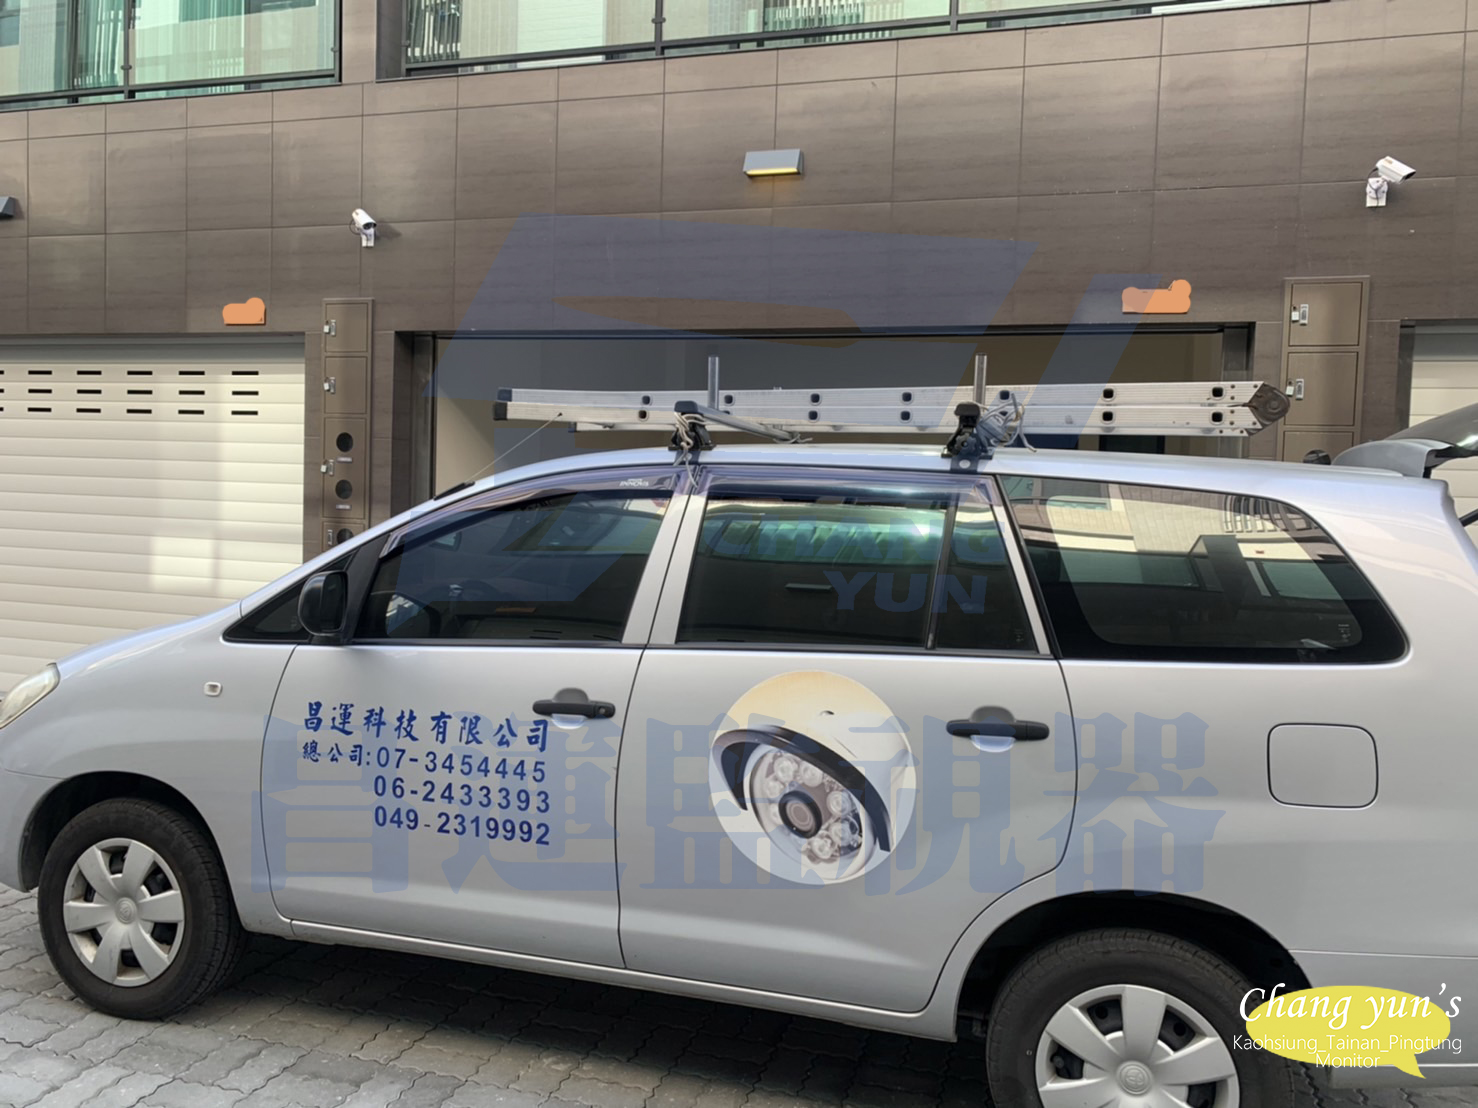 台南市善化區監視器安裝案例 監視系統推薦安裝廠商